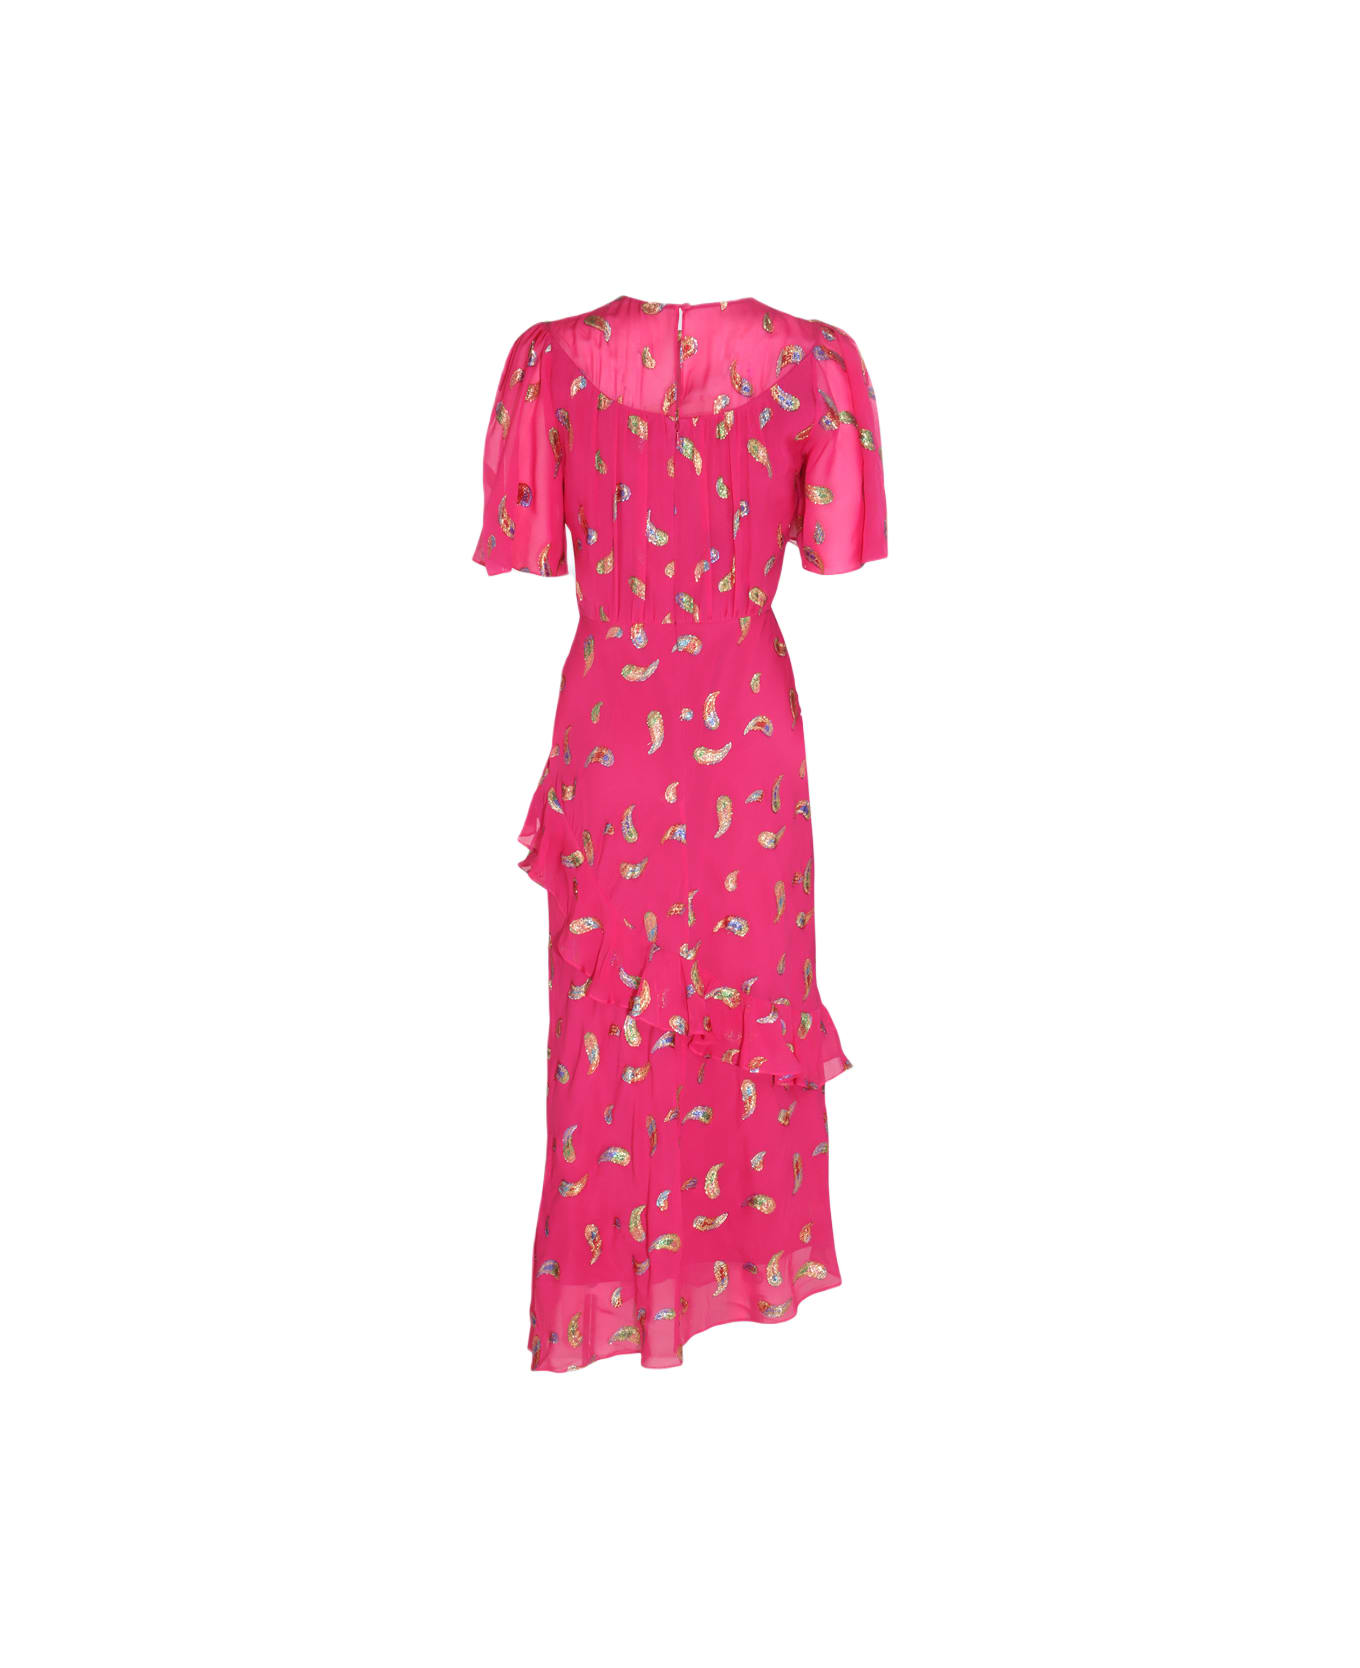 Saloni Pink Silk Blend Dress - FUCHSIA/RAINBOW